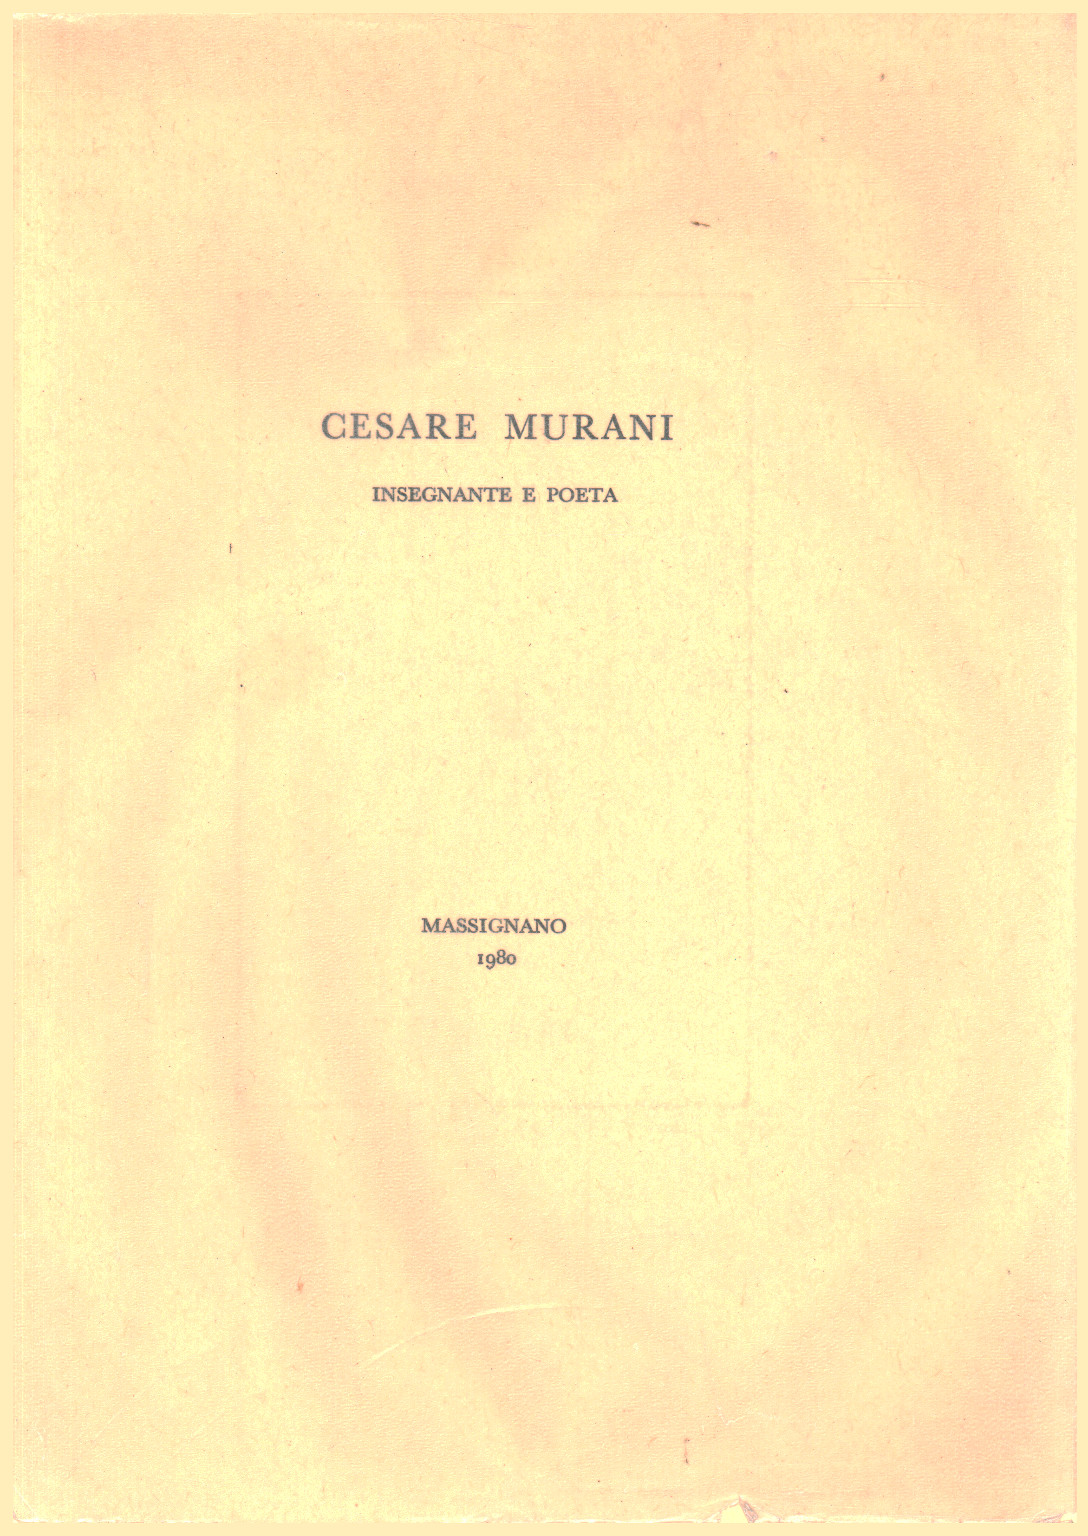 Cesare Murani. Insegnante e poeta, s.a.